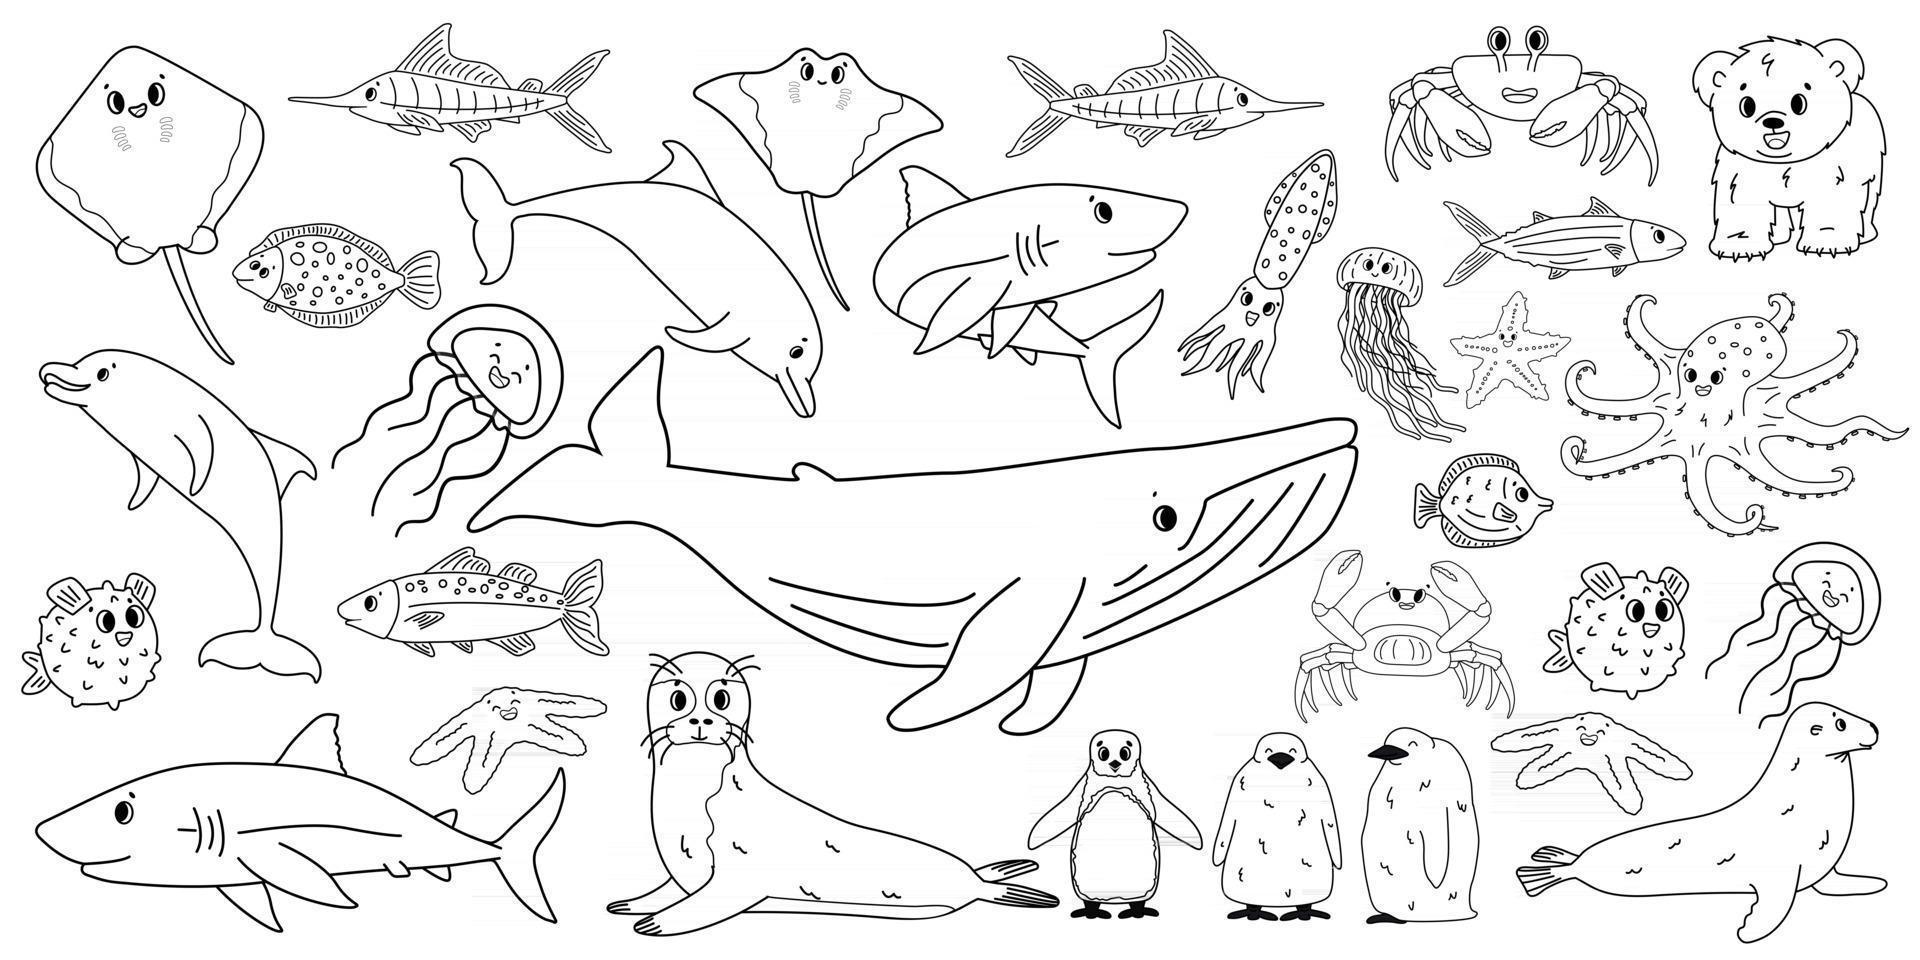 grote reeks vectoren cartoon overzicht geïsoleerd zee oceaan noorden dieren doodle walvis dolfijn haai pijlstaartrog kwallen vis krab koning pinguïn kuiken octopus pelsrob ijsbeer welp voor kleurboek